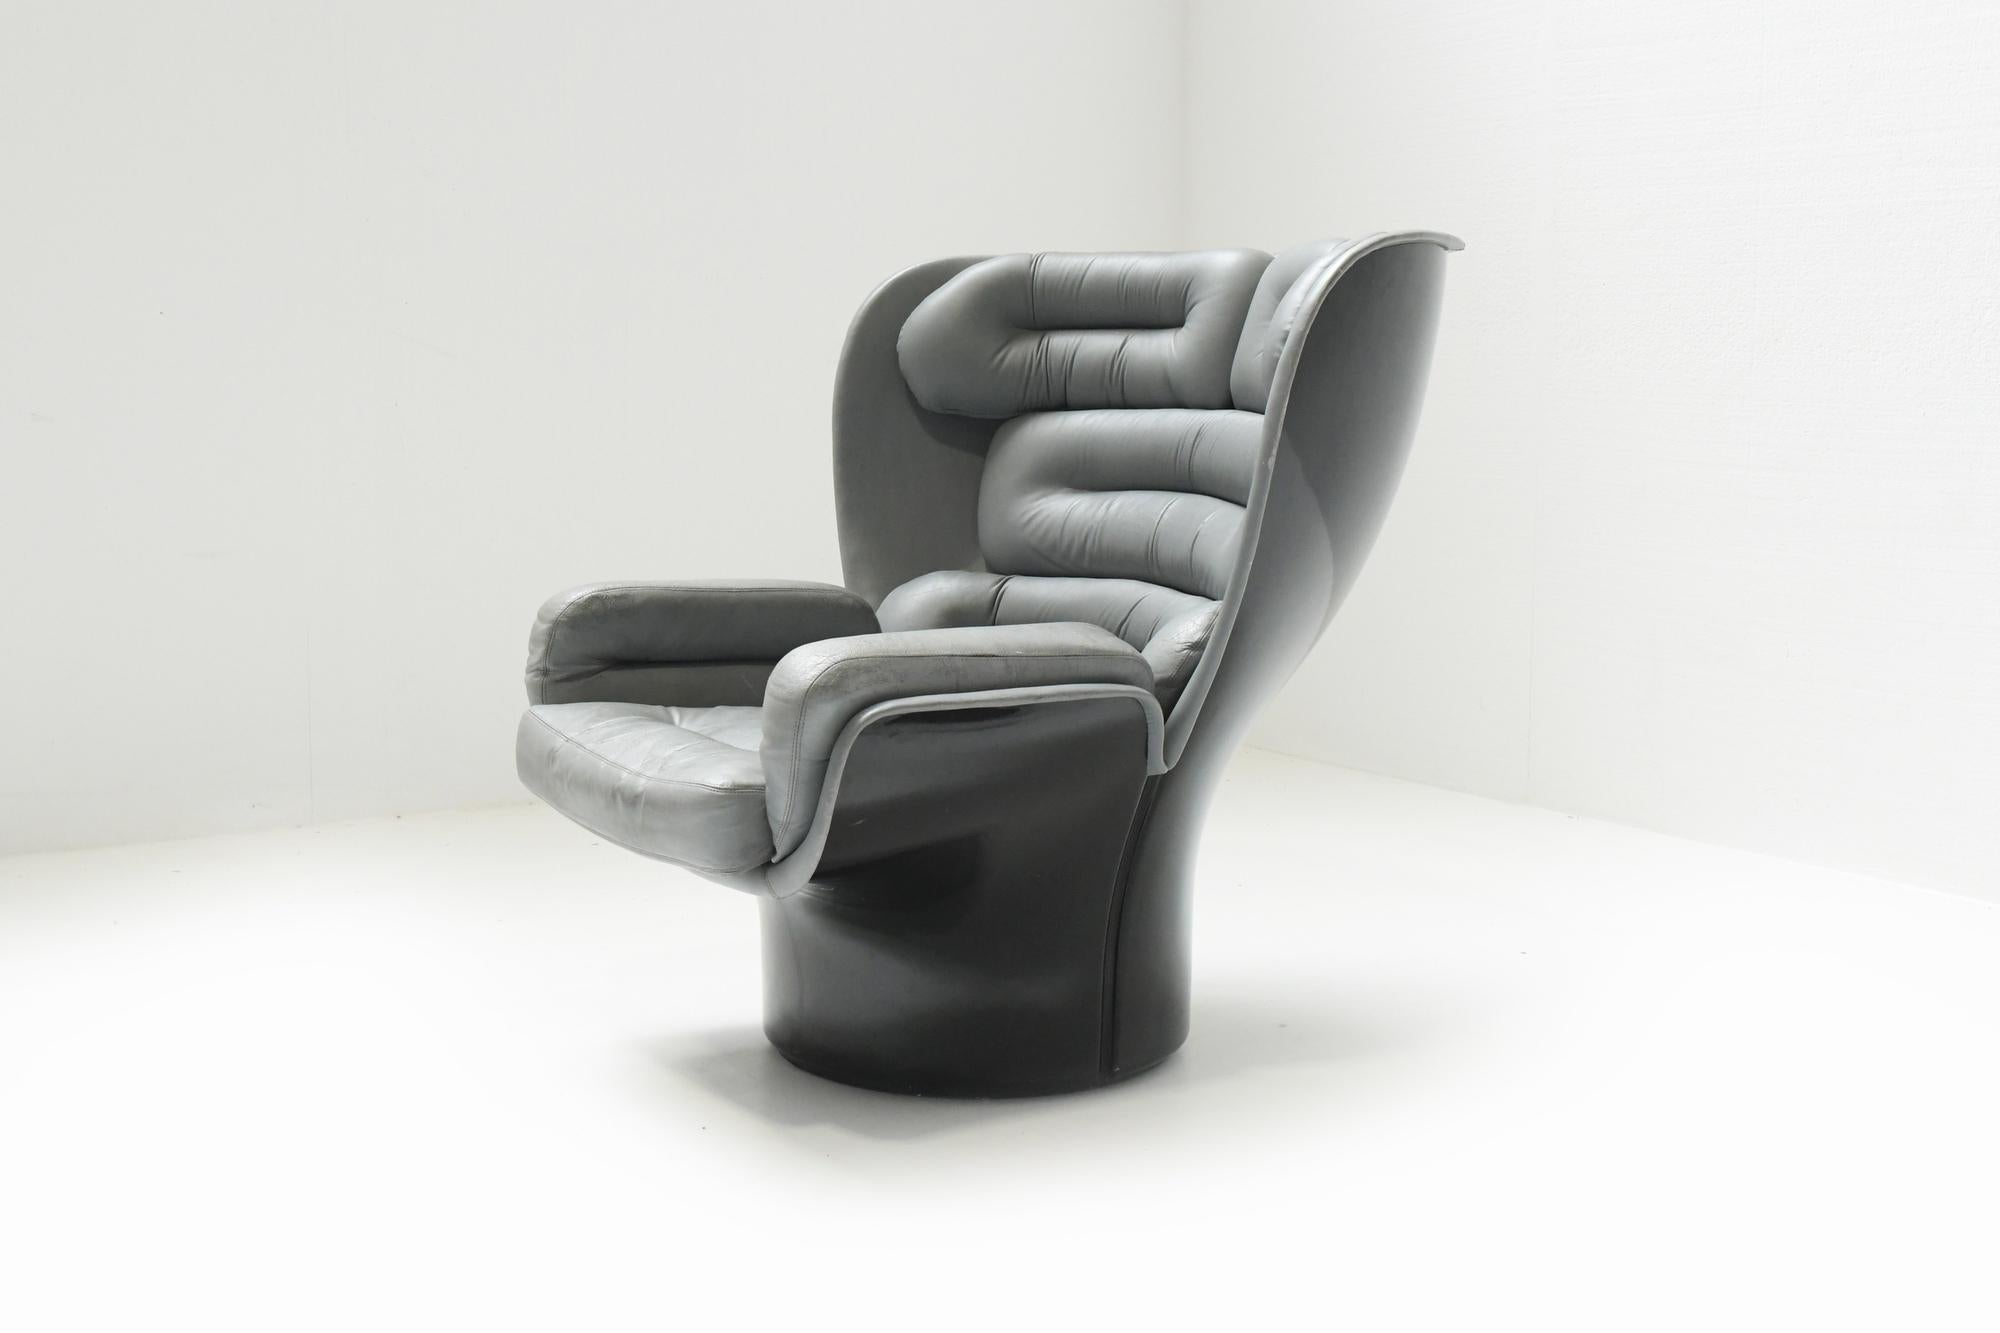 Stilvolle Farbkombination bei diesem Vintage-Stuhl von Elda.
Noch 100% original.

Tolles patiniertes graues Leder mit schwarzer Glasfaserschale.

Diese kultige  Der Sessel 